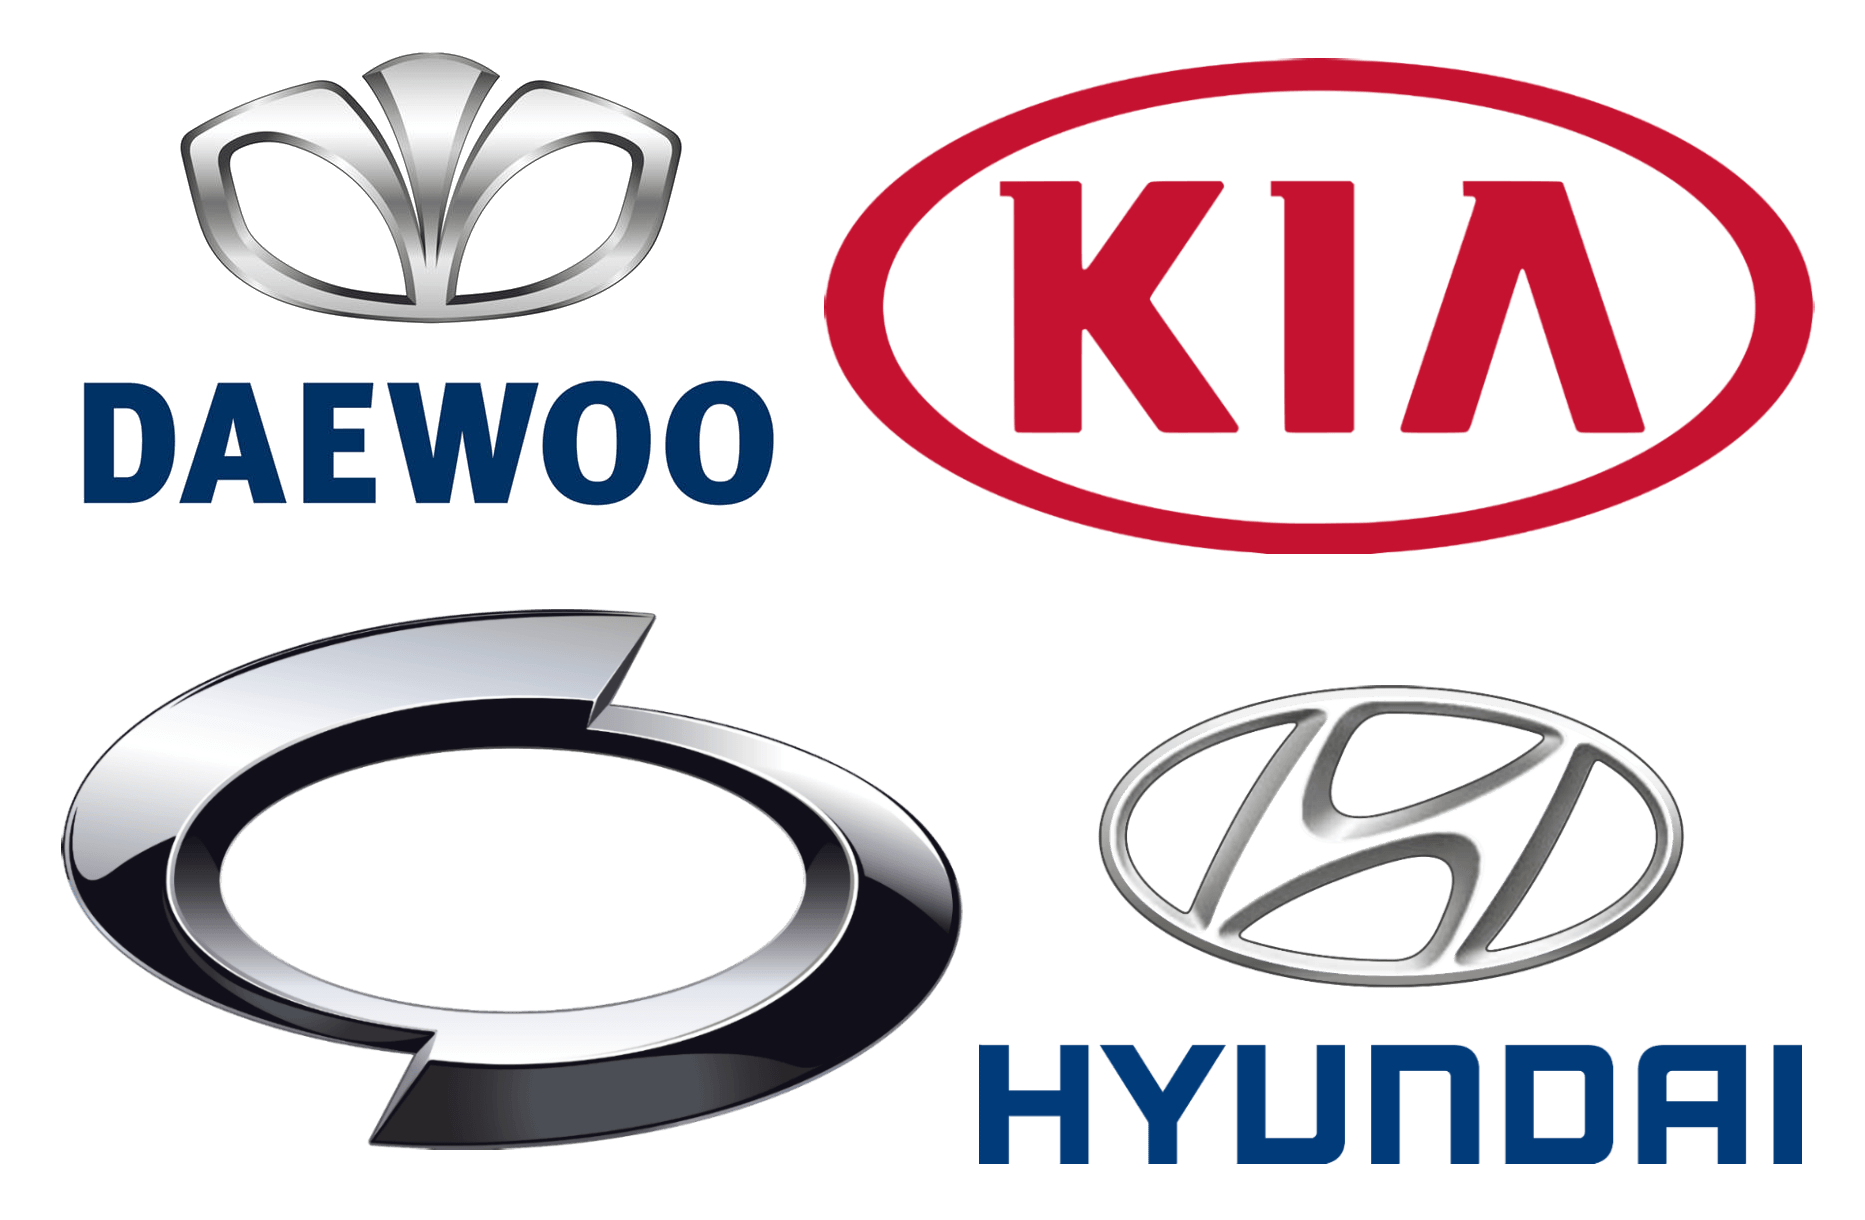 Foreign Car Brand Logo - Korean Car Brands, Companies and Manufacturers | Car Brand Names.com